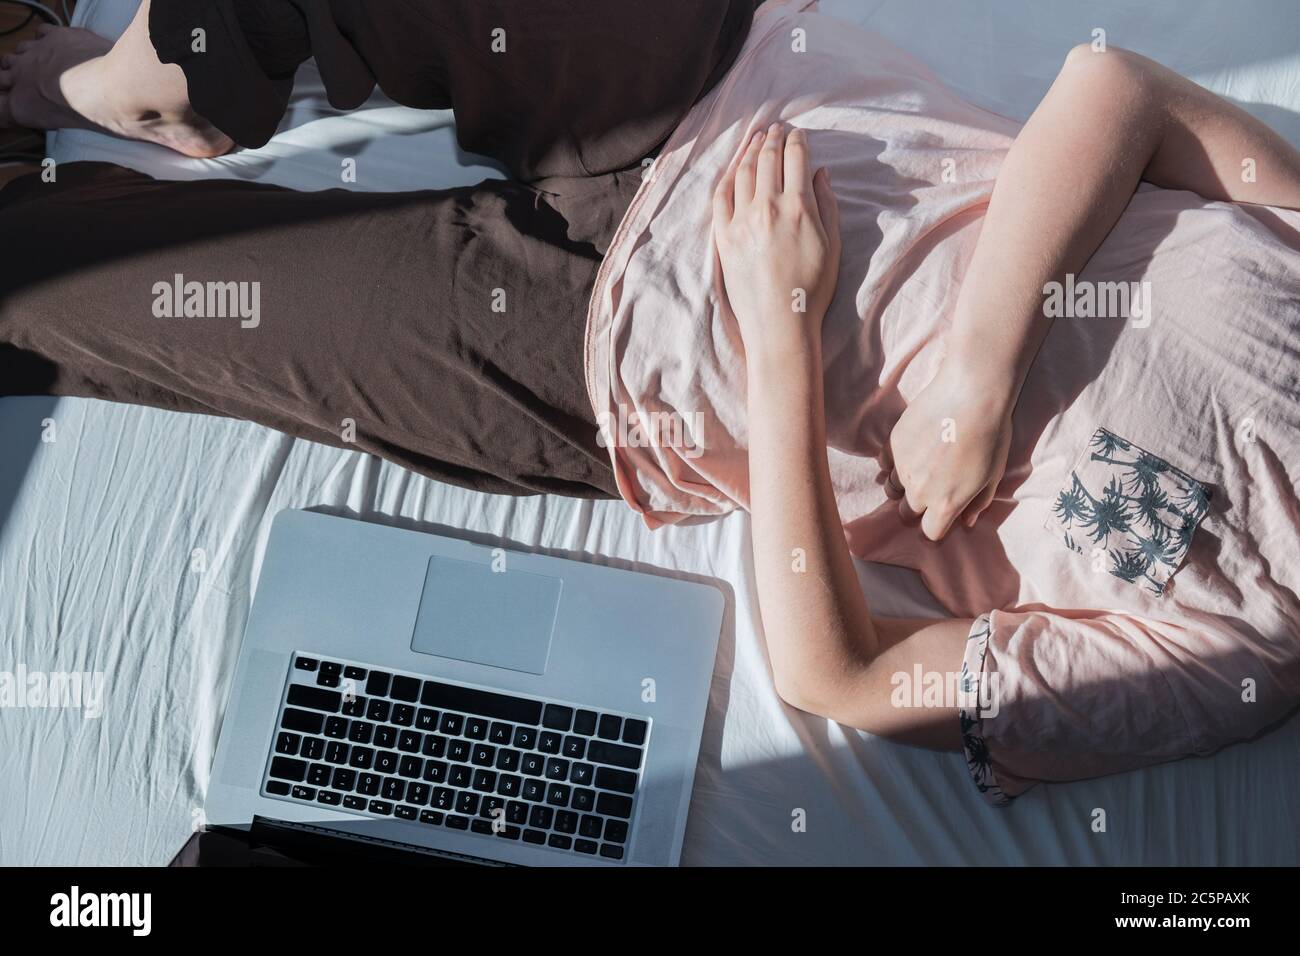 Dilación, descanso del trabajo: Una mujer descansa en la cama junto a una computadora. Concepto de trabajo remoto, no ser productivo, ser trabajo perezoso Foto de stock